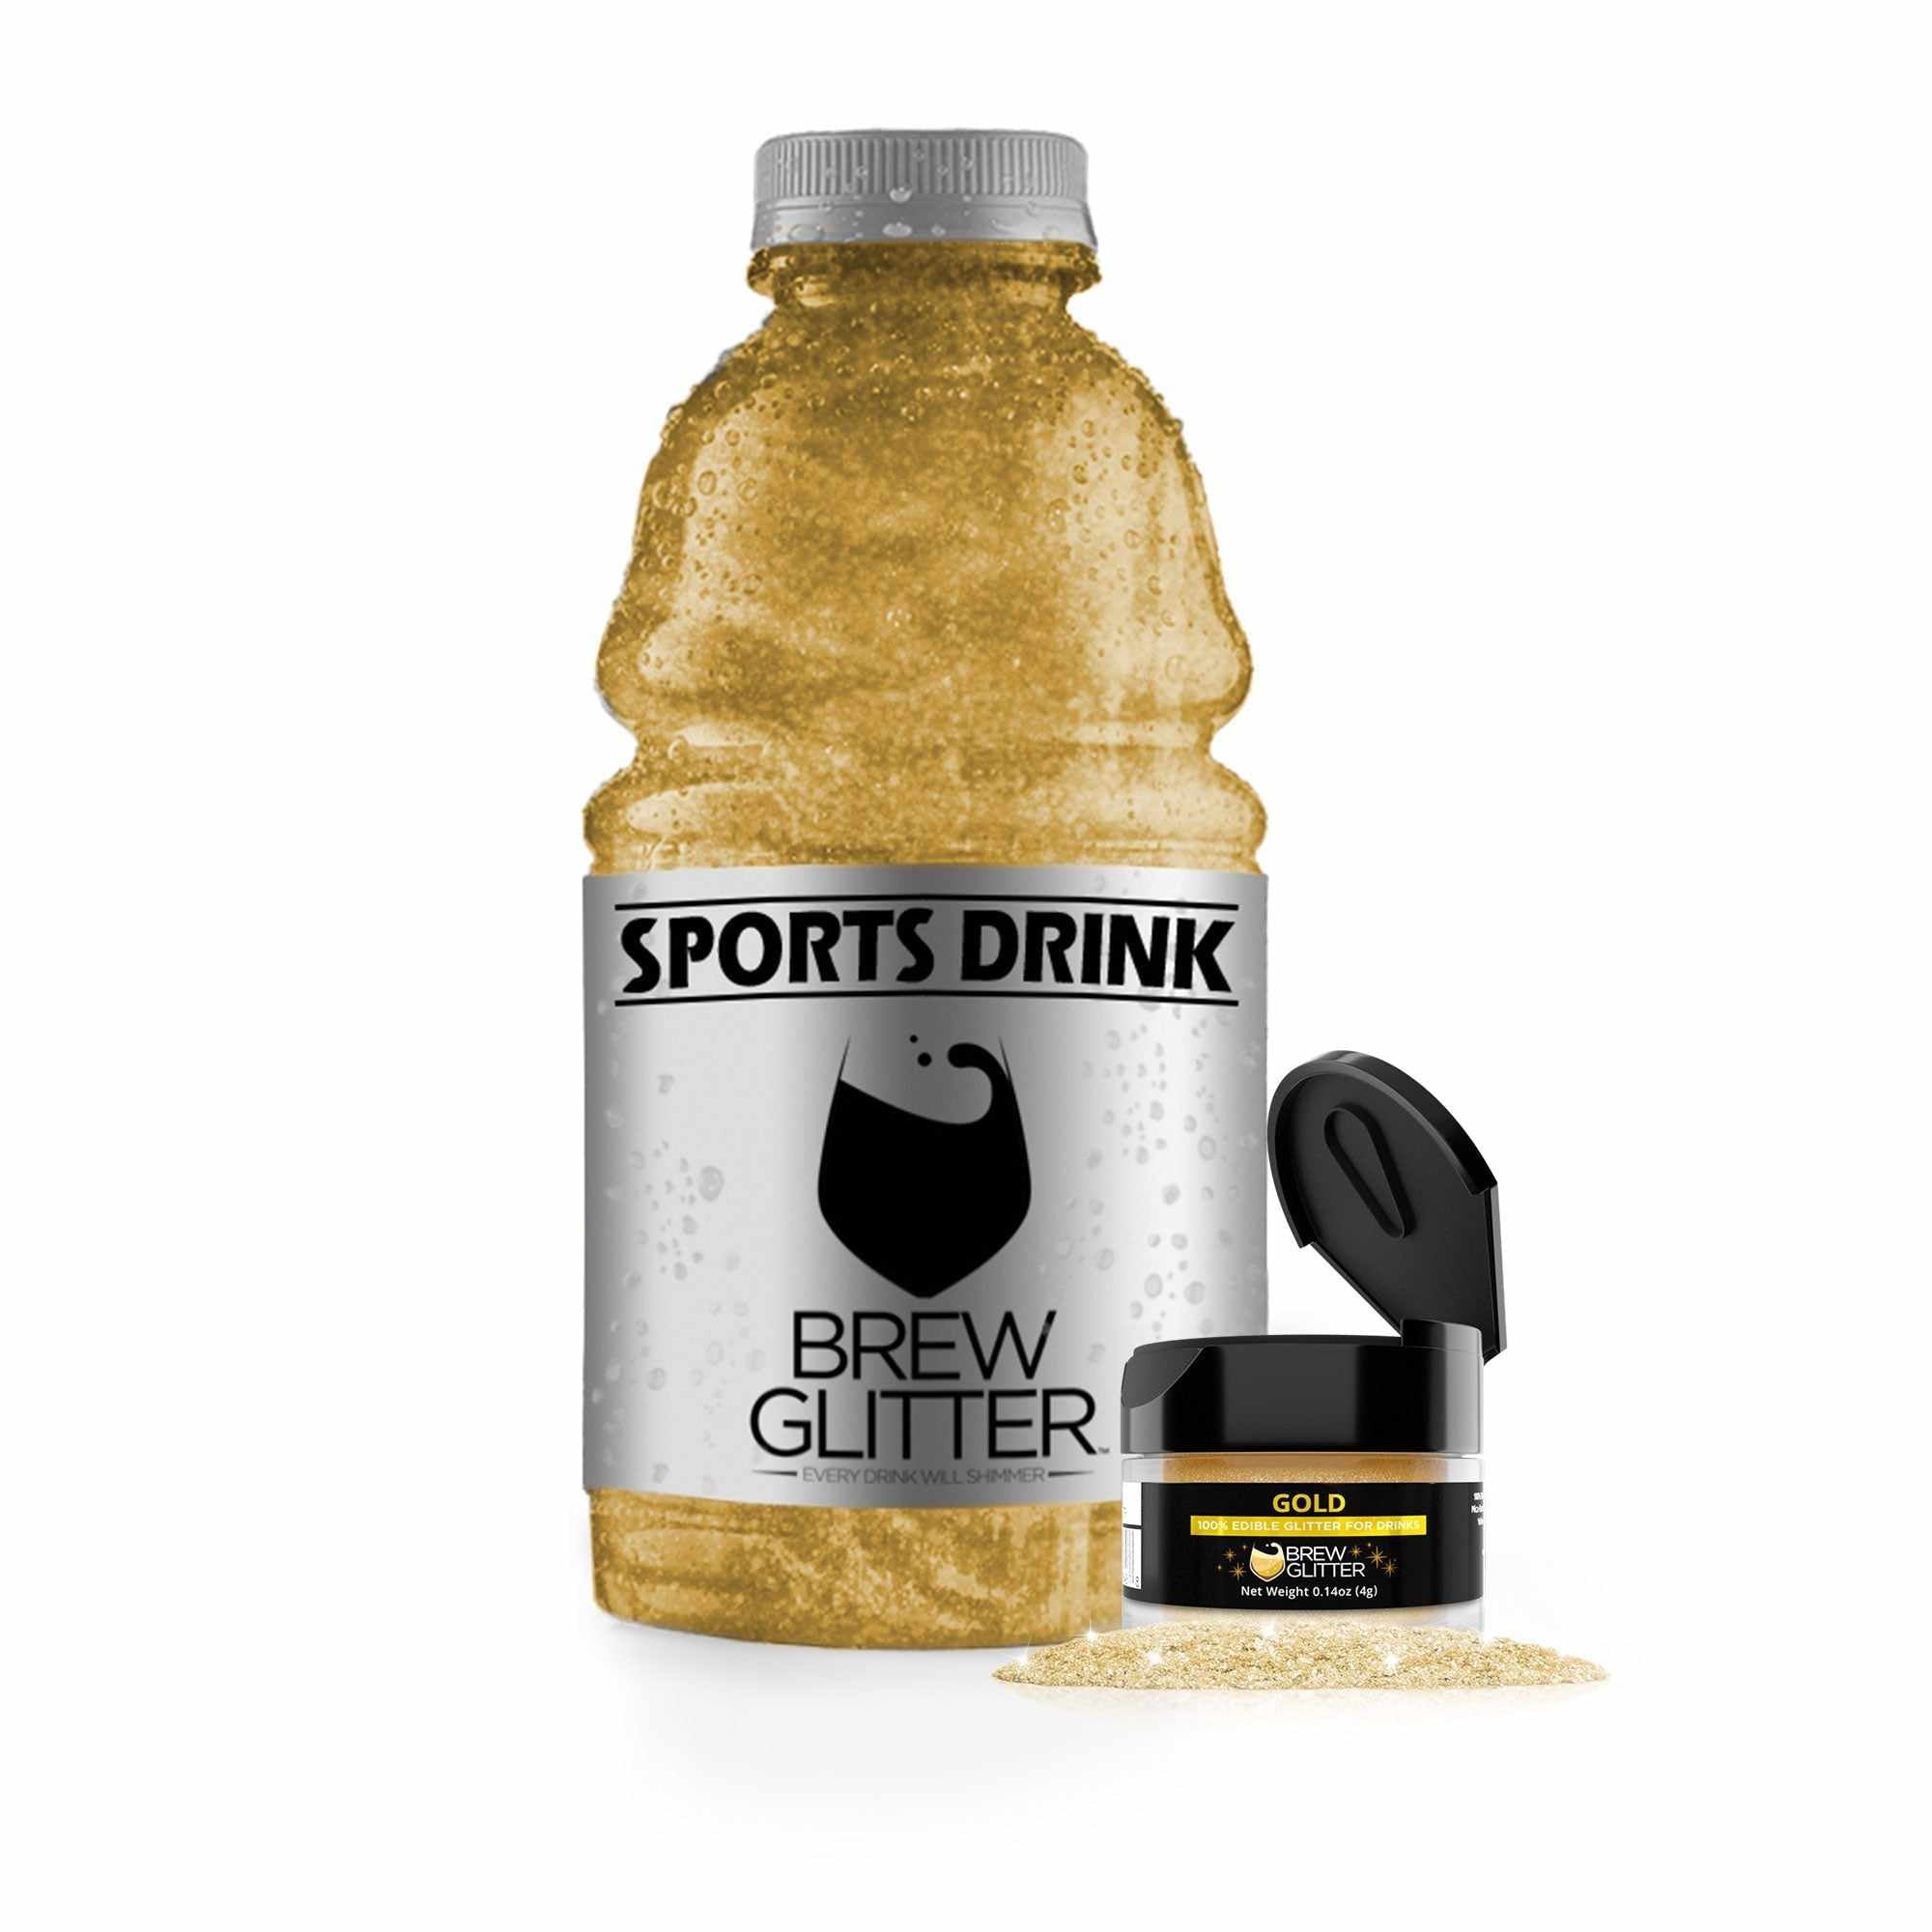 Blacksherbet Gold Edible Glitter for Drinks 5 Grams, KOSHER Certified, Drink G